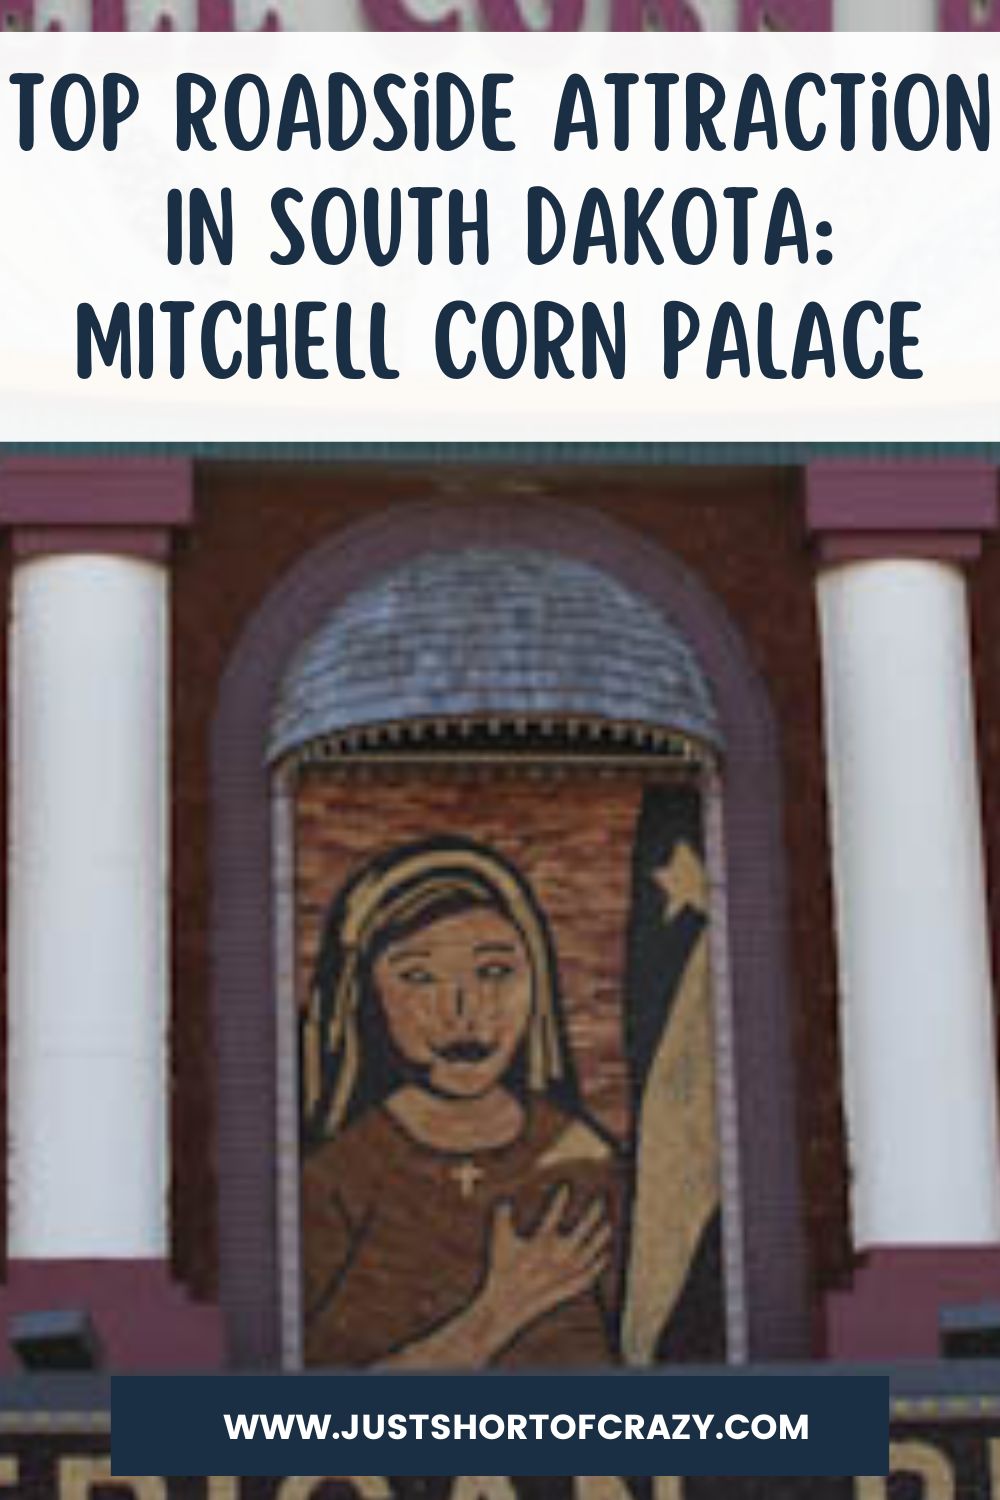 MITCHELL CORN PALACE